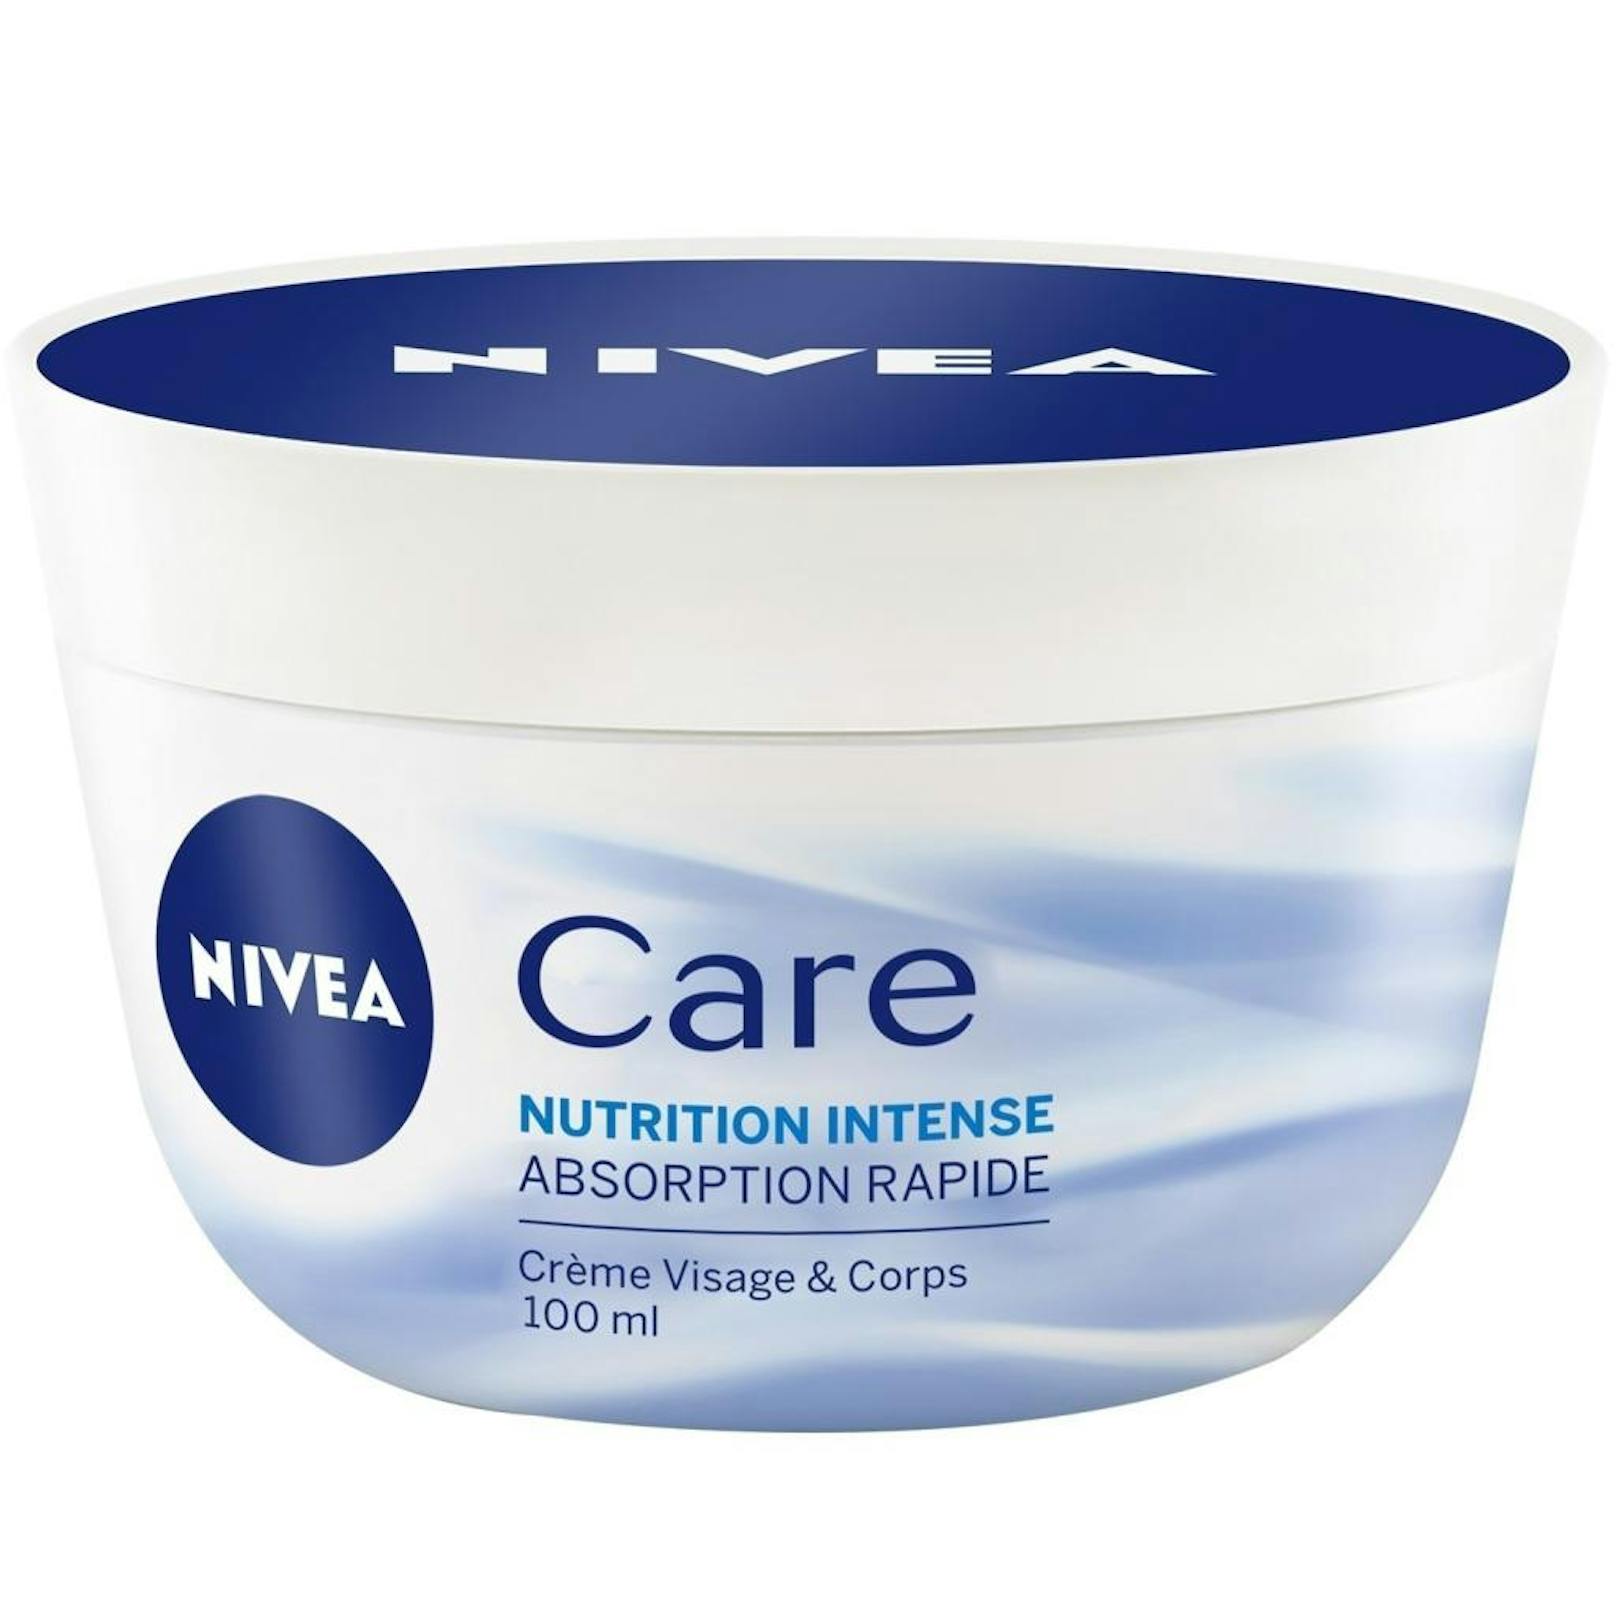 Die NIVEA Care Creme enthält speziell ausgewählte Hydro-Wachse, die eingebettet in eine Gel-Textur sofort von der Haut aufgenommen werden und die natürliche Hautbarriere stärken.